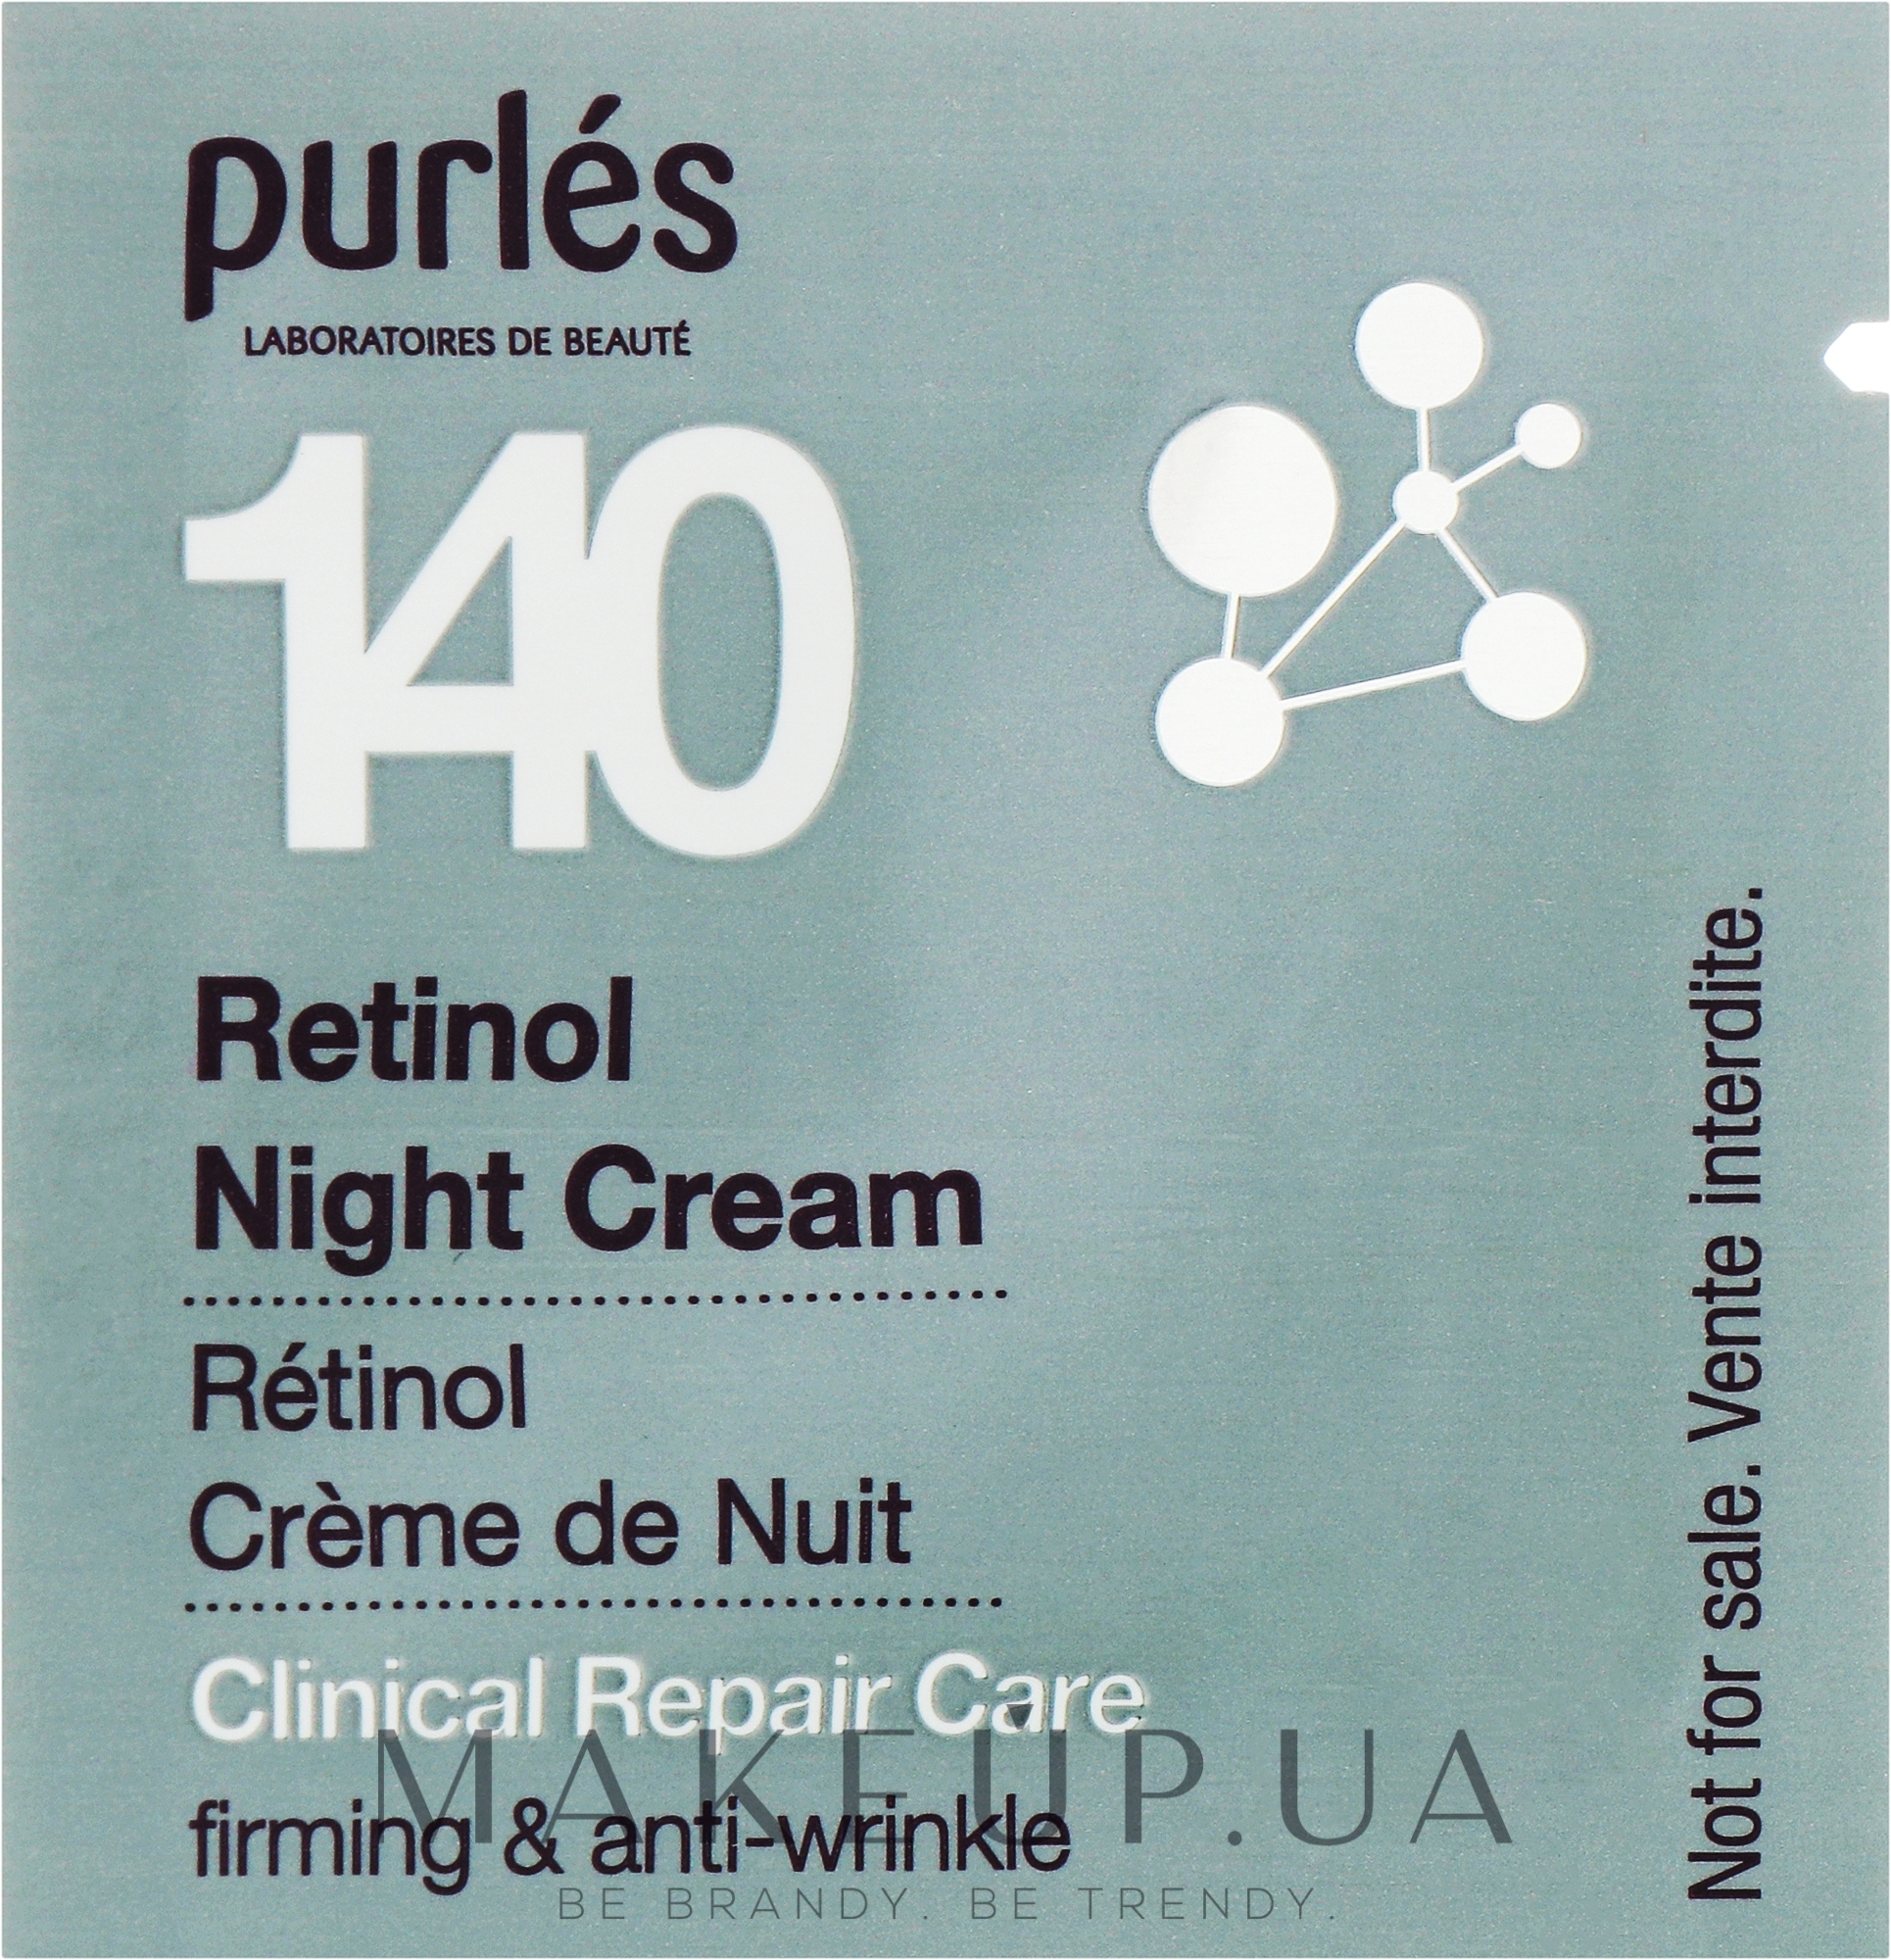 Ретиноловый ночной крем - Purles Clinical Repair Care 140 Retinol Night Cream (пробник) — фото 1ml